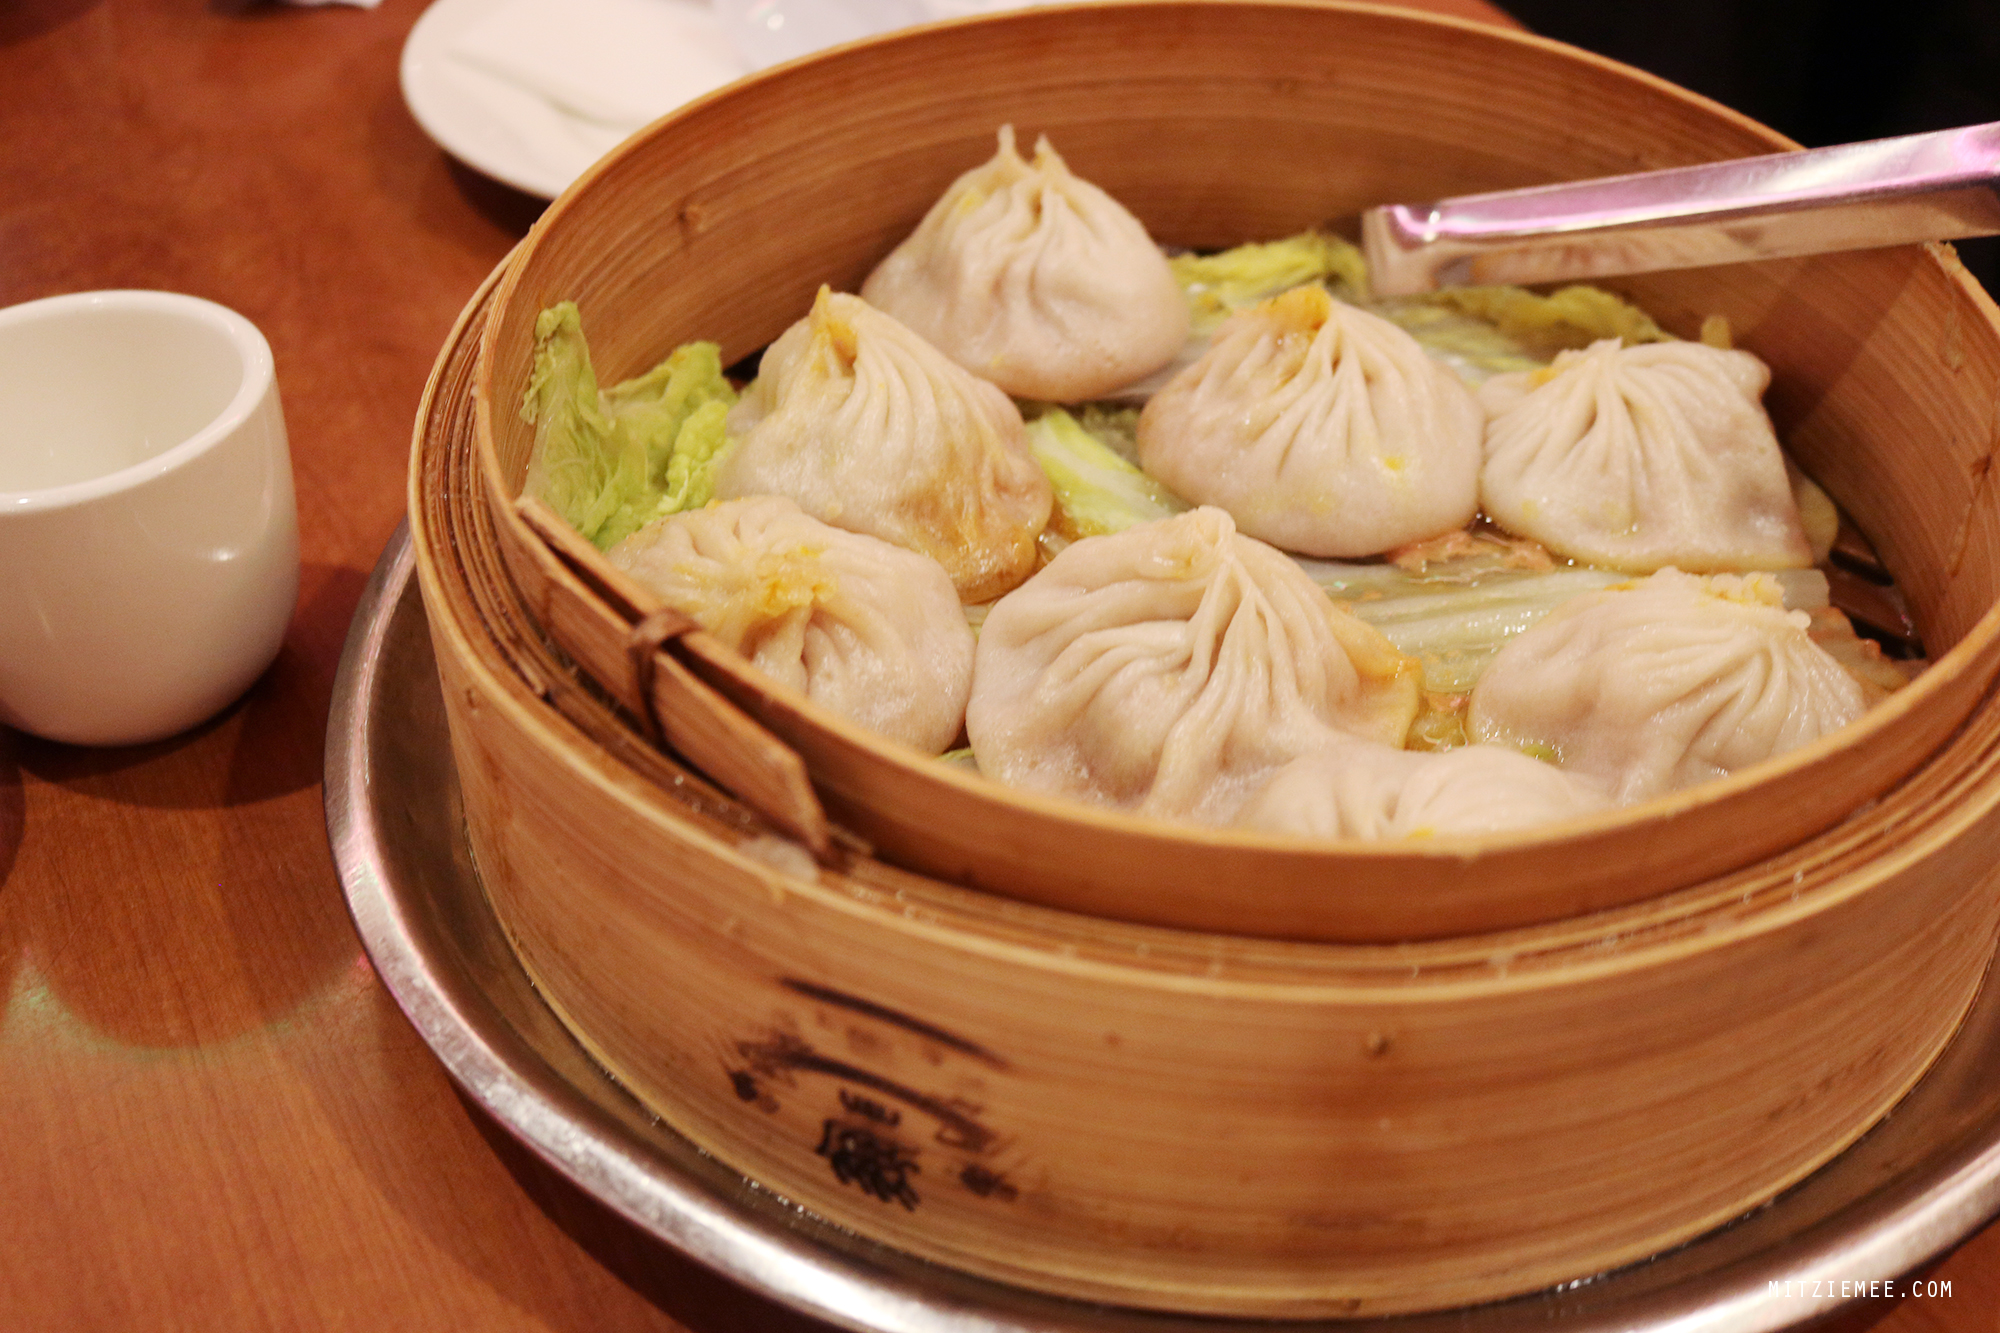 Soup dumplings, xiao long bao, at Joe's Shanghai, New York